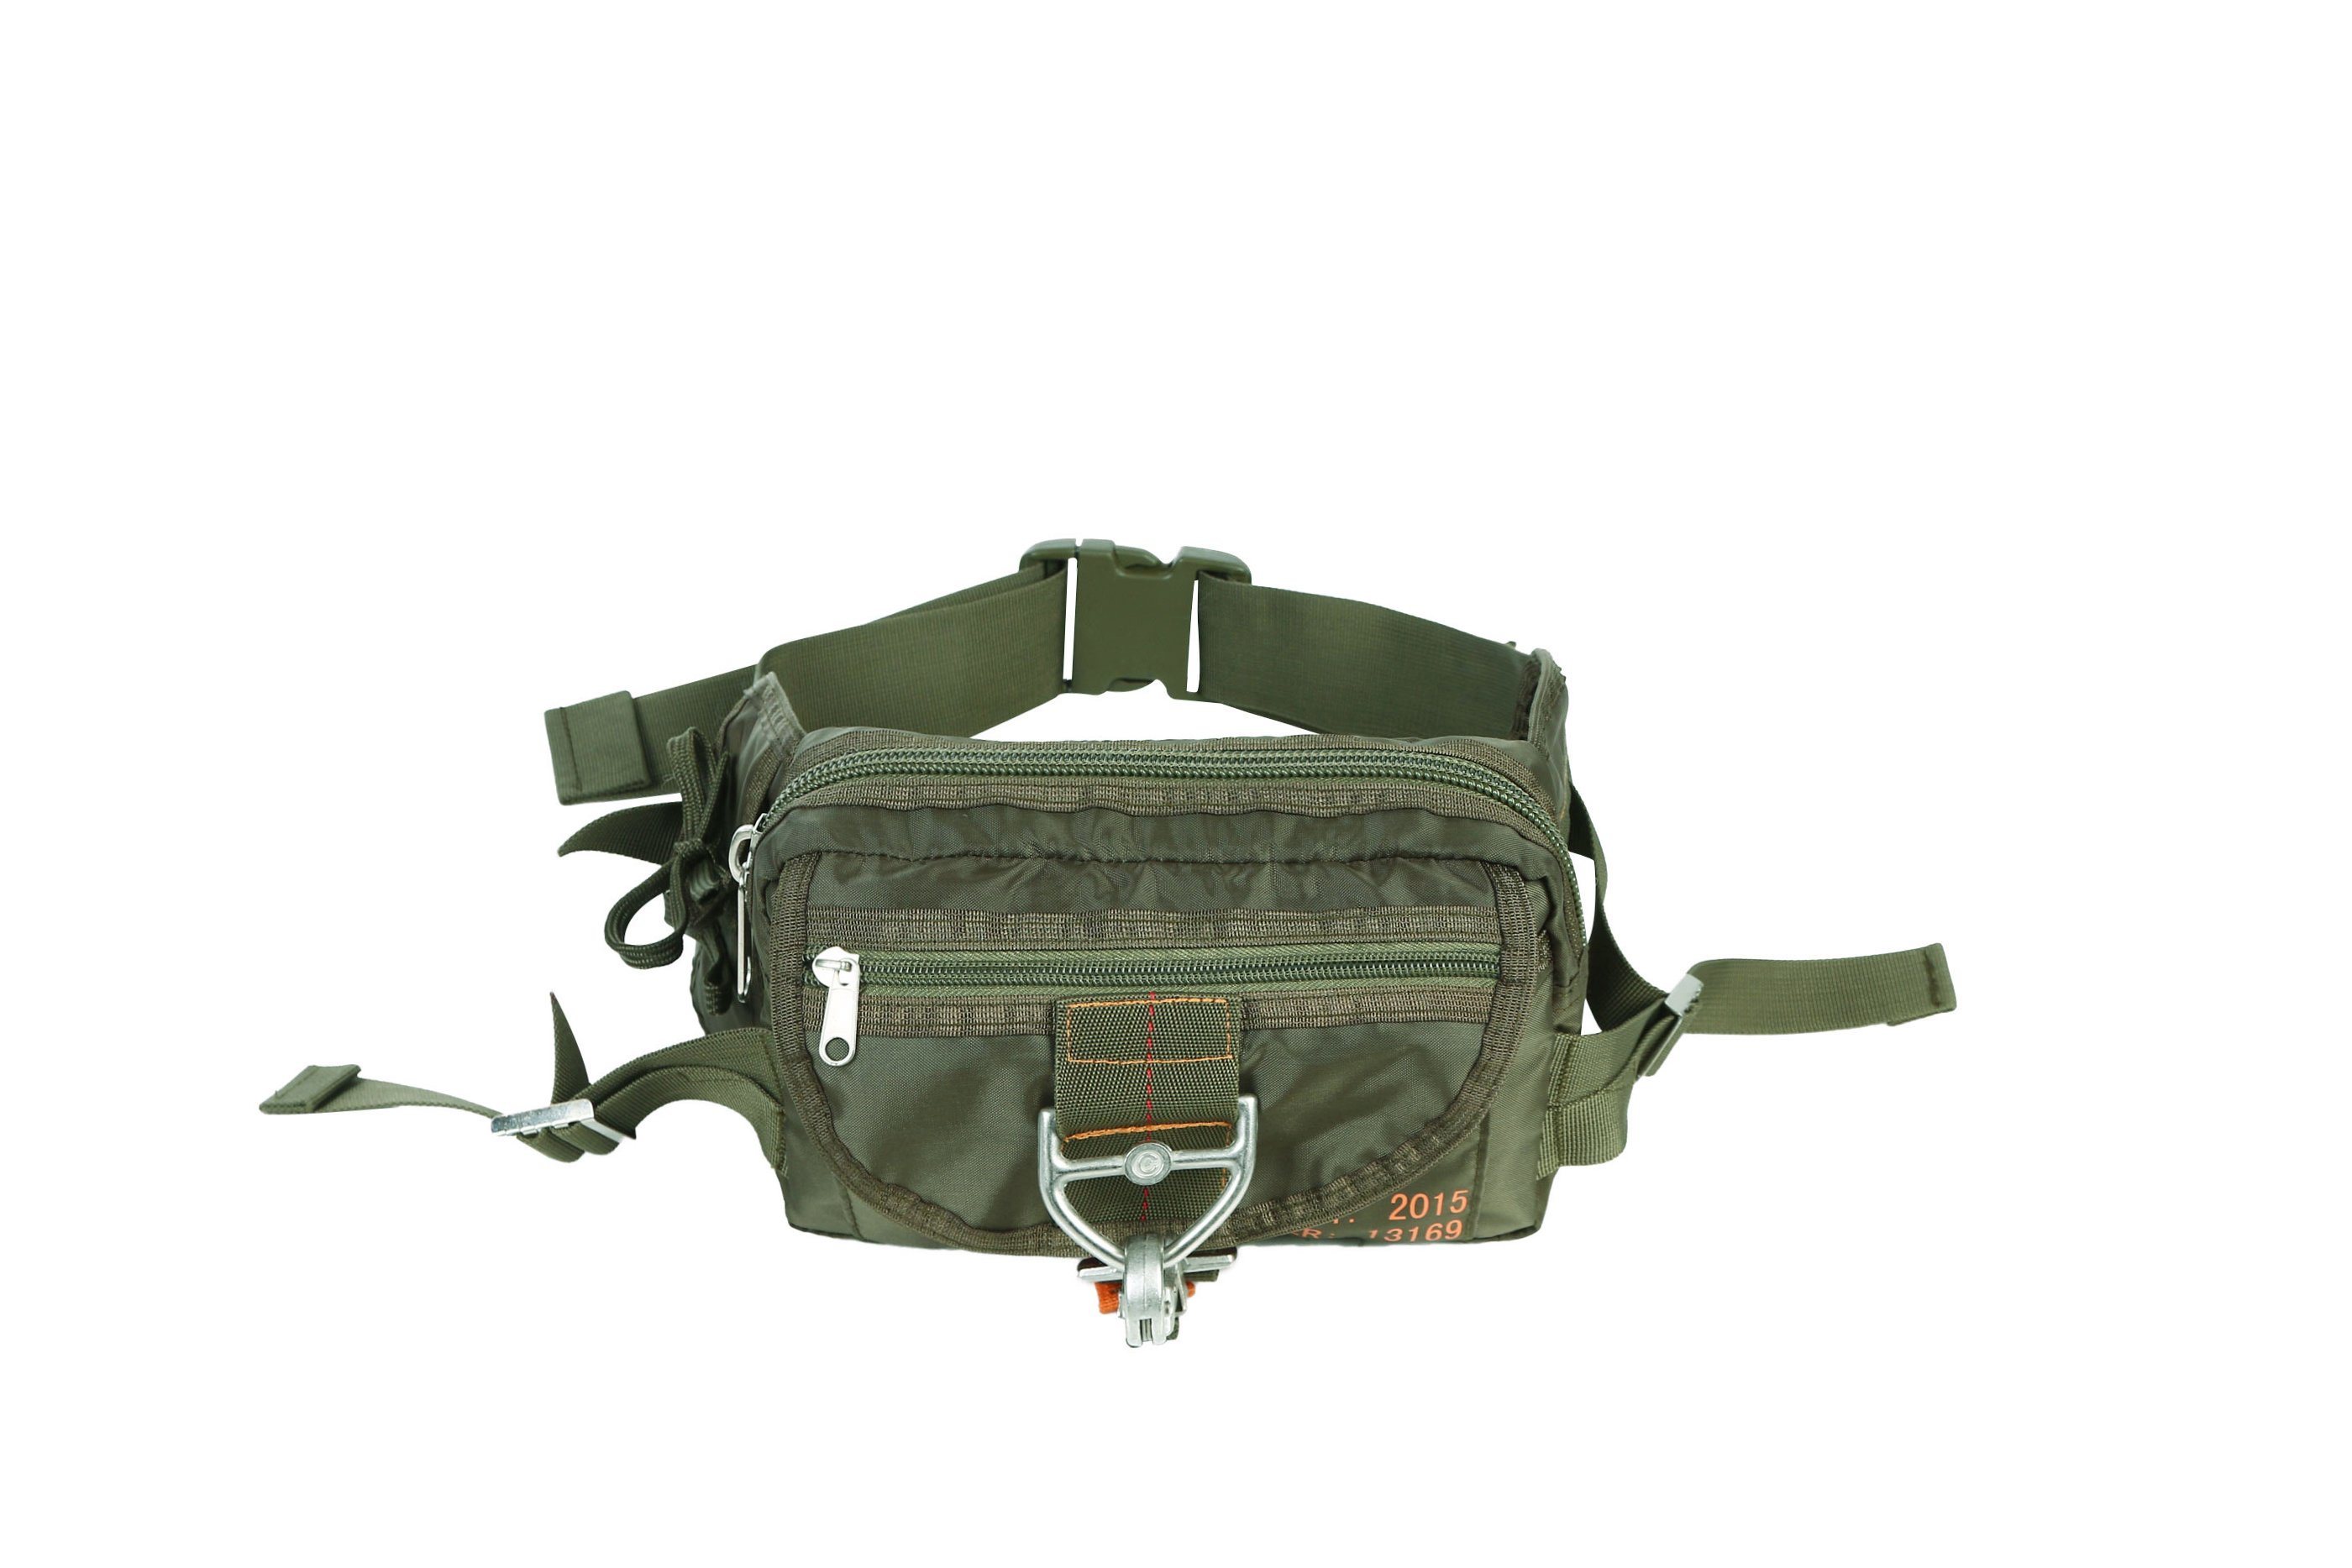 Newest Design Tactical Lightweight Waist Parachute Bag for Outdoor